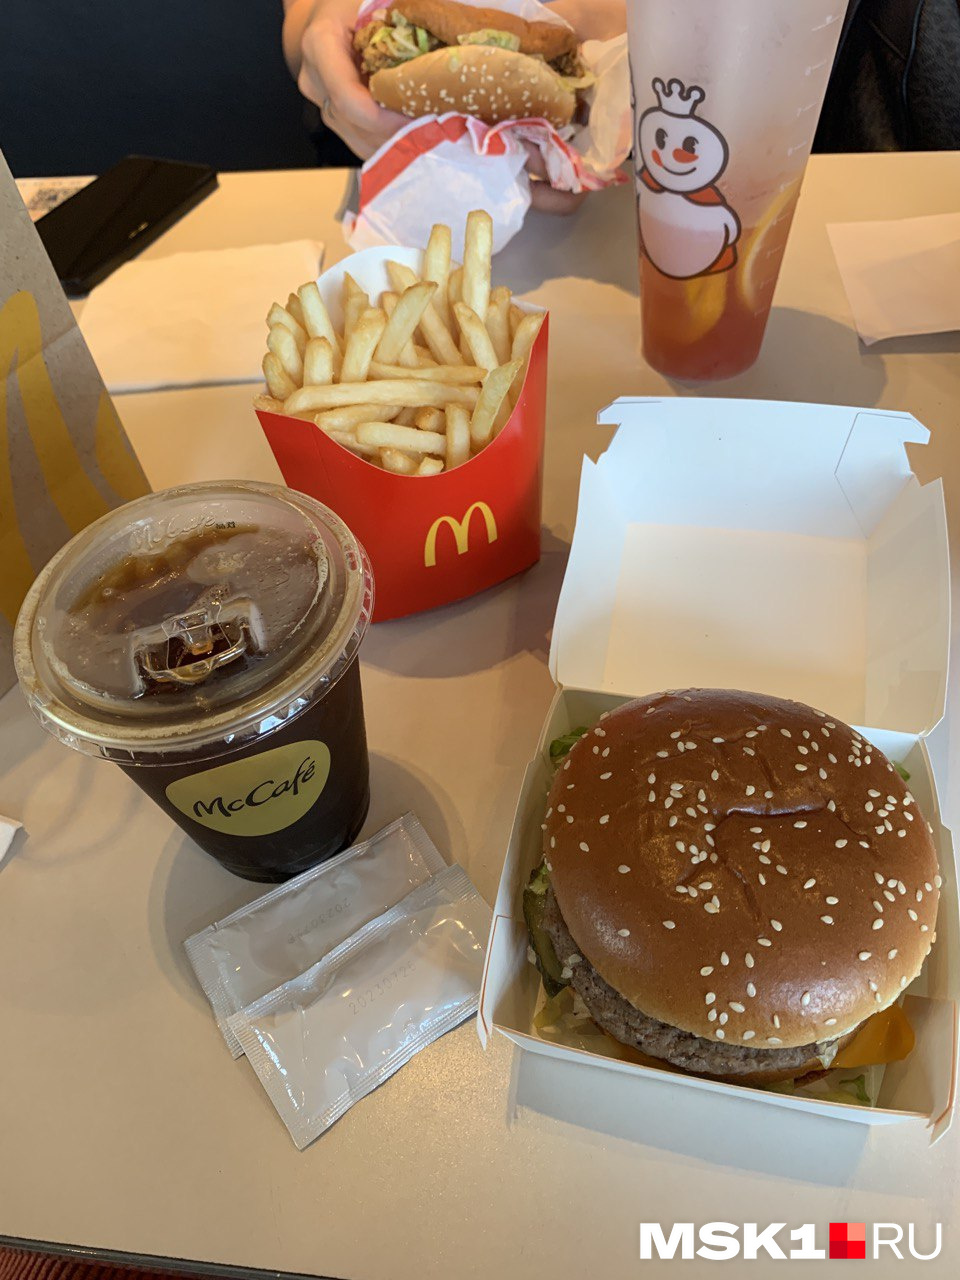 «Биг Мак», картошка и черный кофе в McDonald’s стоии около 45 юаней (600 рублей)